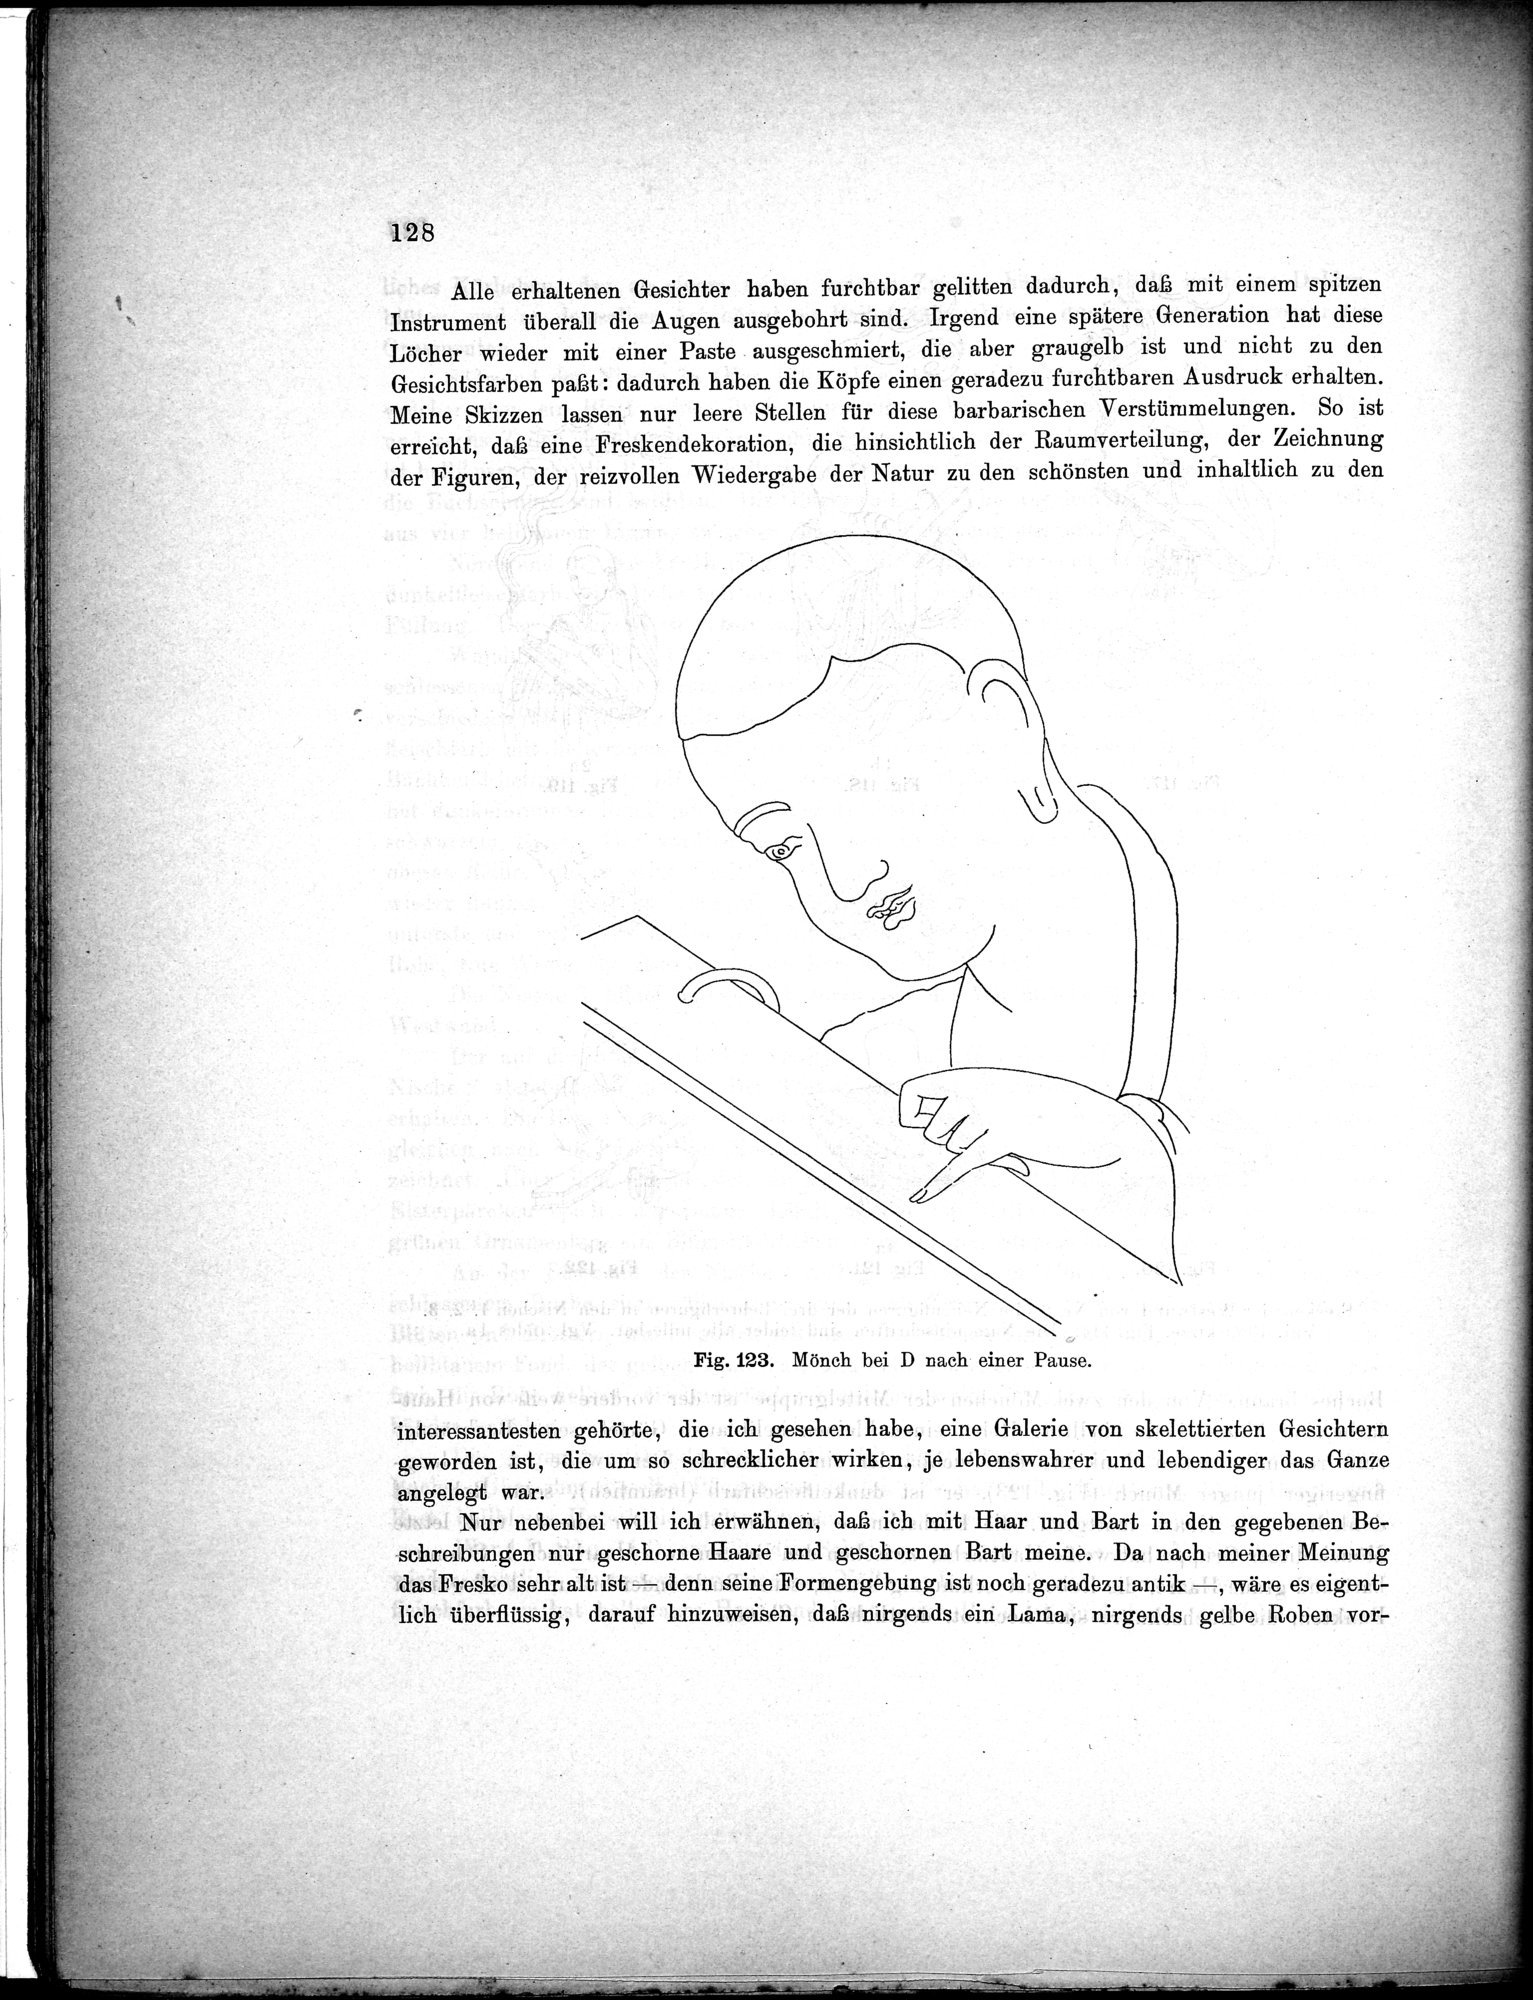 Bericht über archäologische Arbeiten in Idikutschari und Umgebung im Winter 1902-1903 : vol.1 / Page 138 (Grayscale High Resolution Image)